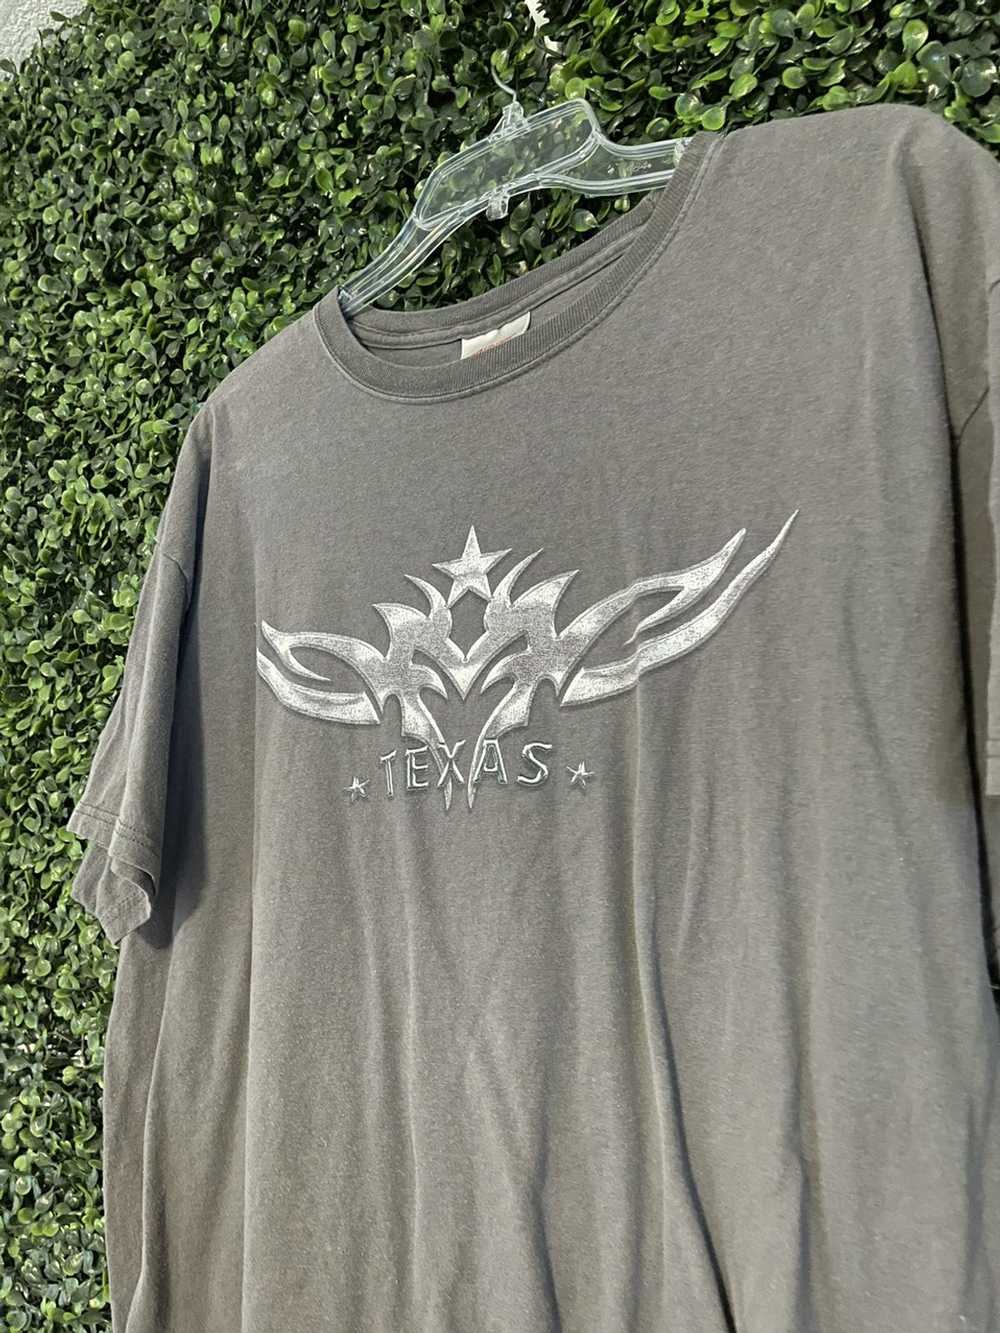 Vintage Vintage washed Texas t shirt - image 2